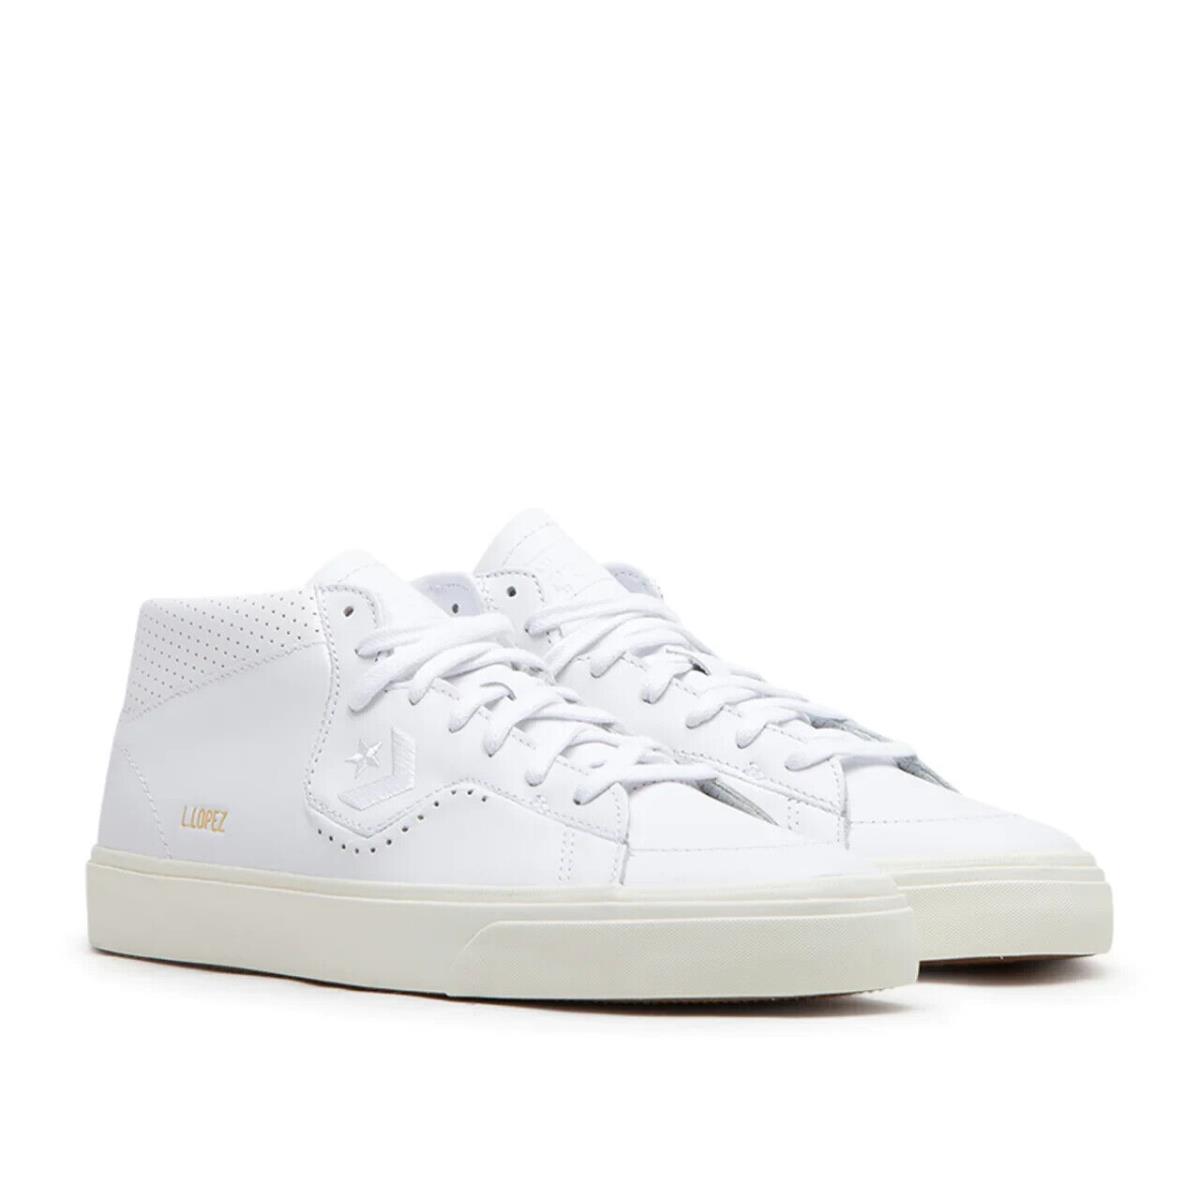 Converse Cons Louie Lopez Pro Mid Leather White A05090C Skate Shoes